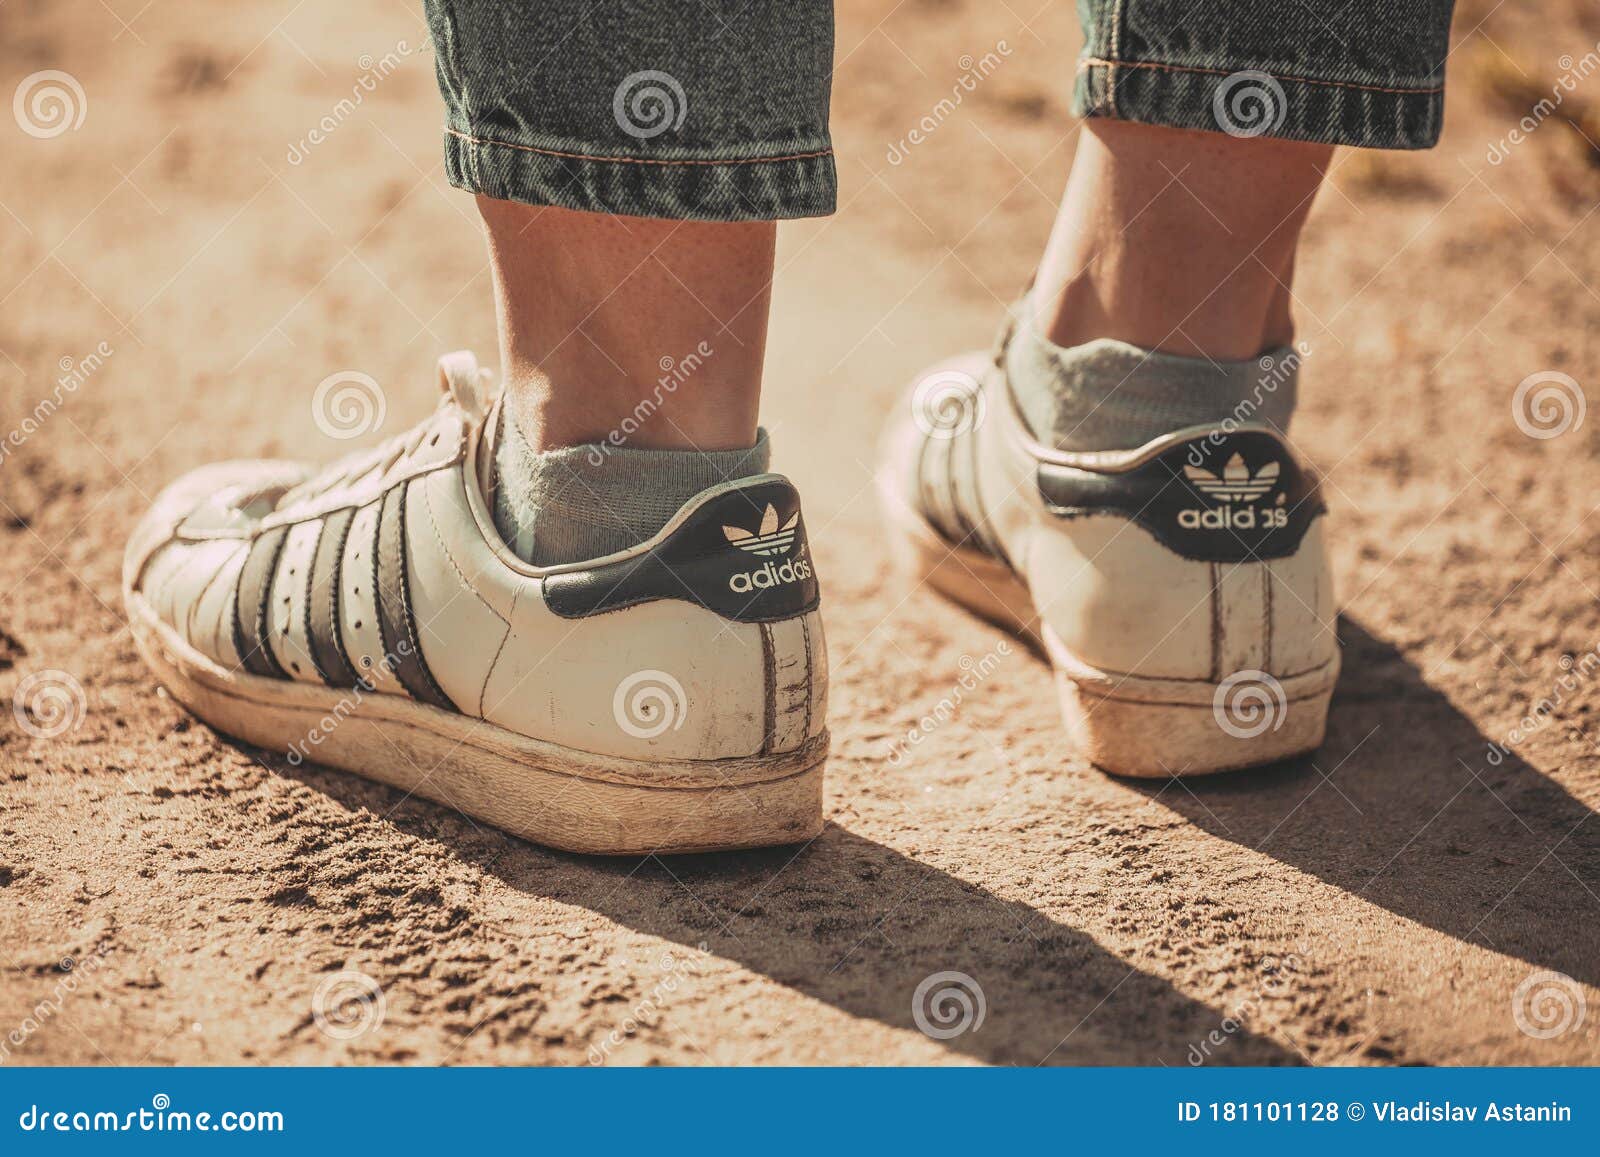 Rusia 20 De Abril De 2020 Pies Femeninos Zapatillas De Adidas Blancas Viejas. Foto de archivo editorial Imagen de editorial, mirada: 181101128